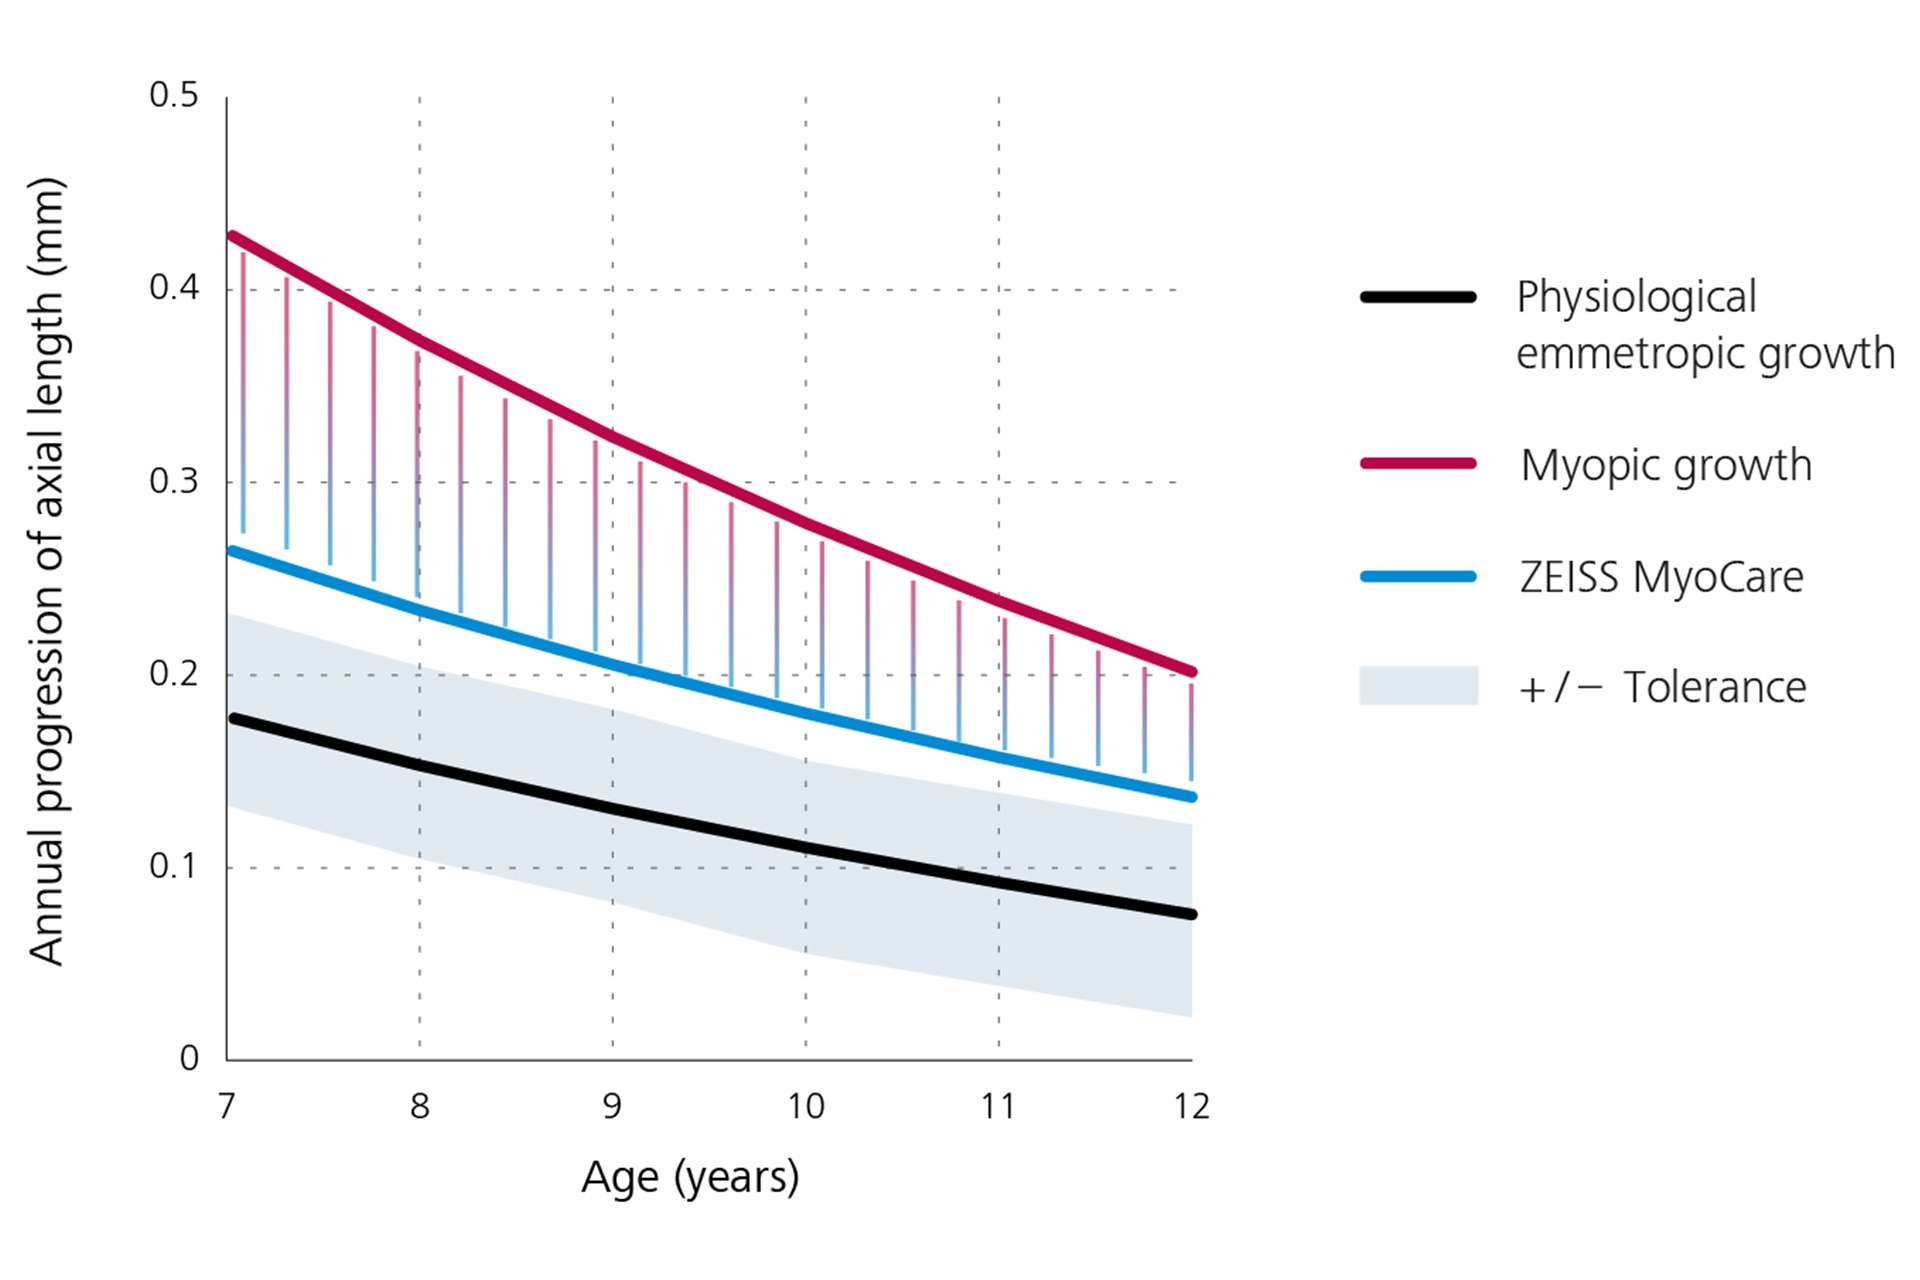 Gráfico lineal que muestra la progresión anual de la longitud axial con el crecimiento emétrope fisiológico en negro en la parte inferior, el crecimiento miópico en rojo en la parte superior y los resultados de los lentes MyoCare de ZEISS en azul en el centro. De este gráfico se deduce que la progresión de la miopía está por debajo de la curva de crecimiento de la miopía si se utilizan lentes MyoCare de ZEISS.  